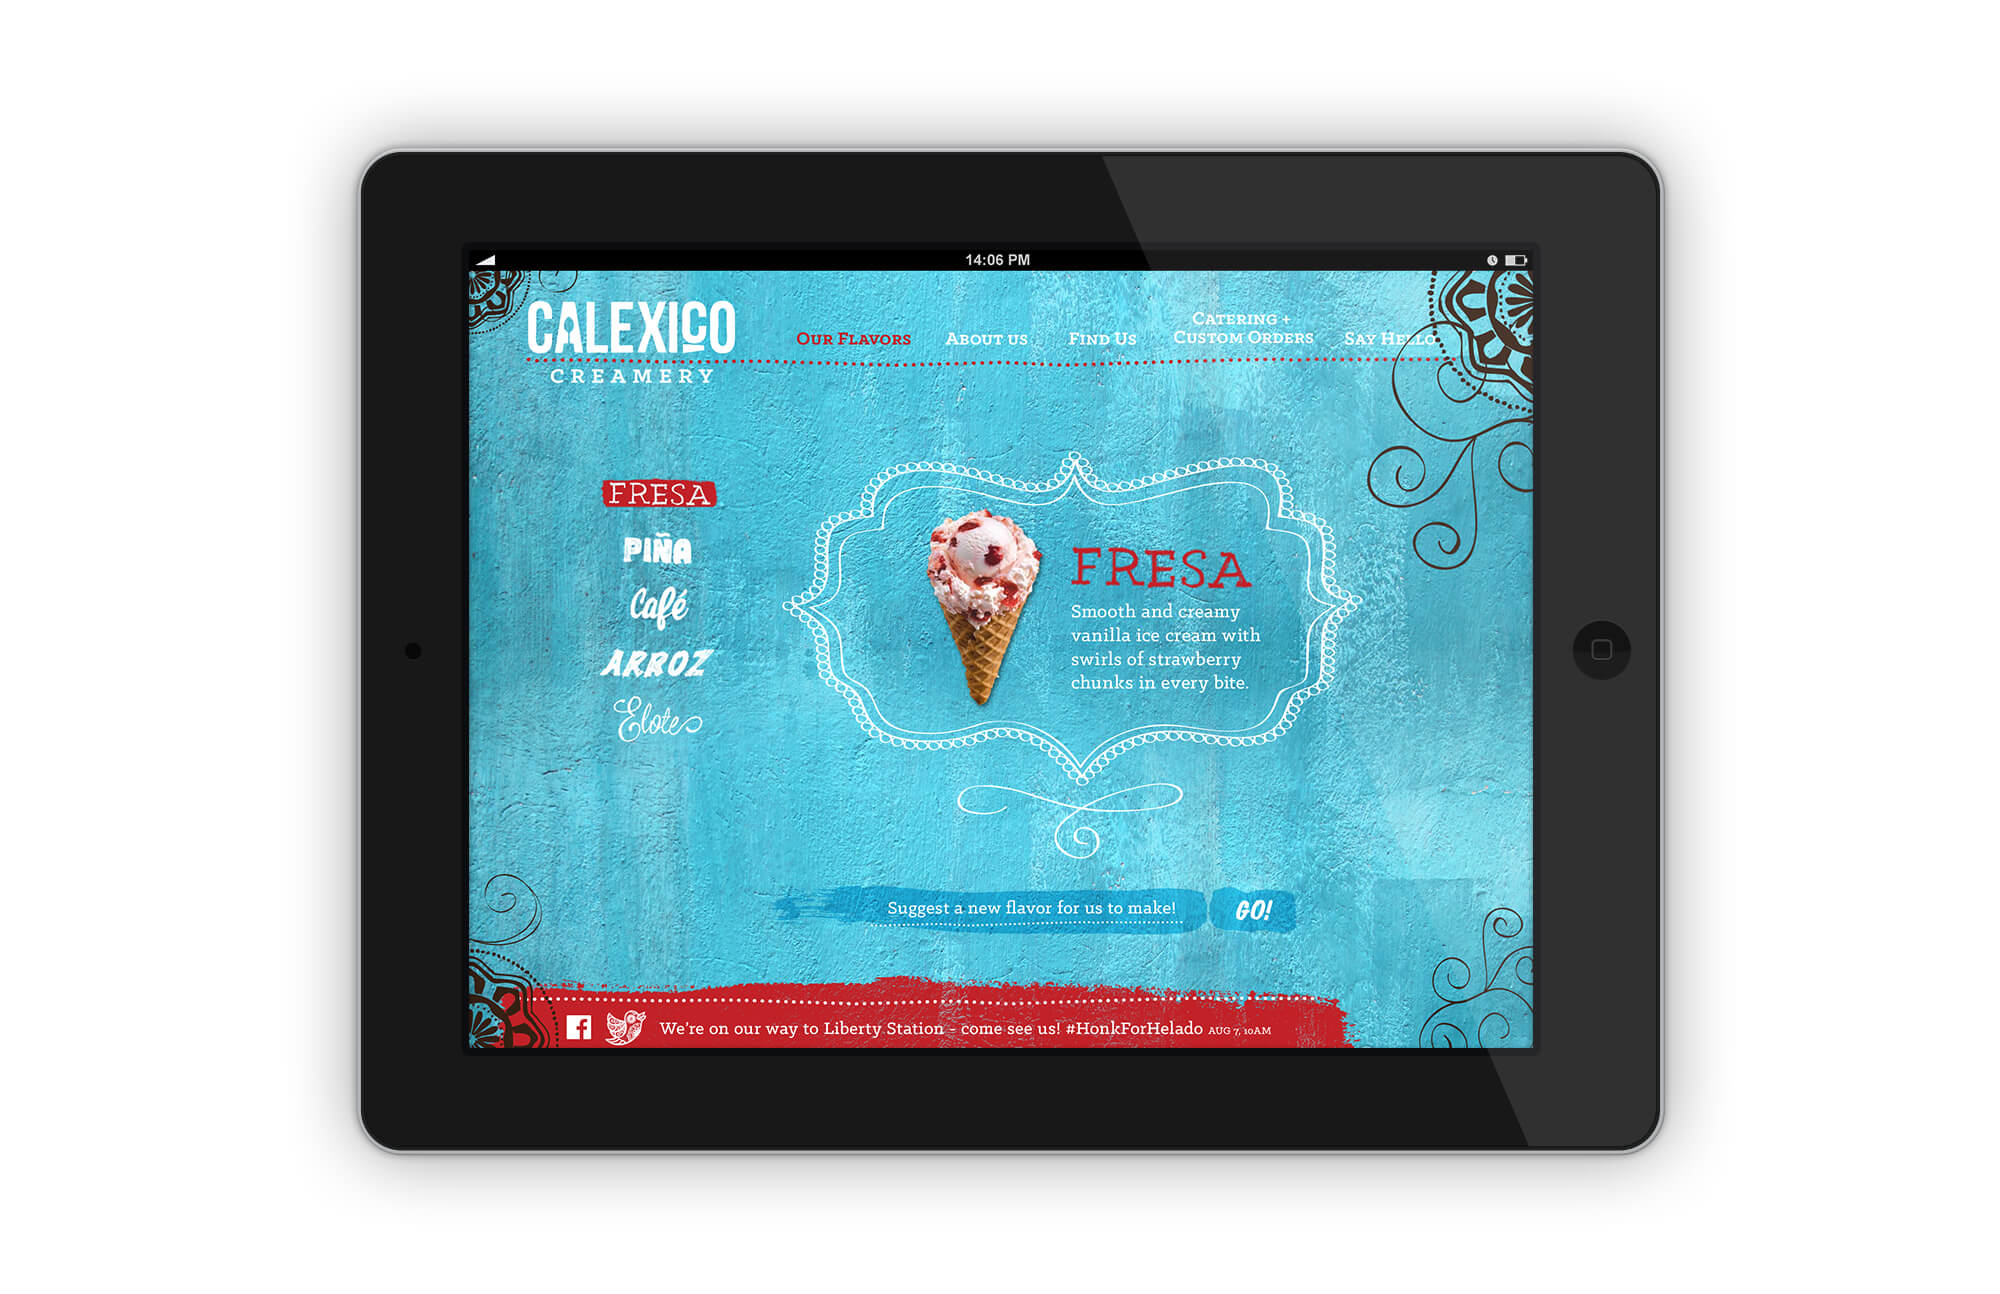 calexico-creamery-web-design